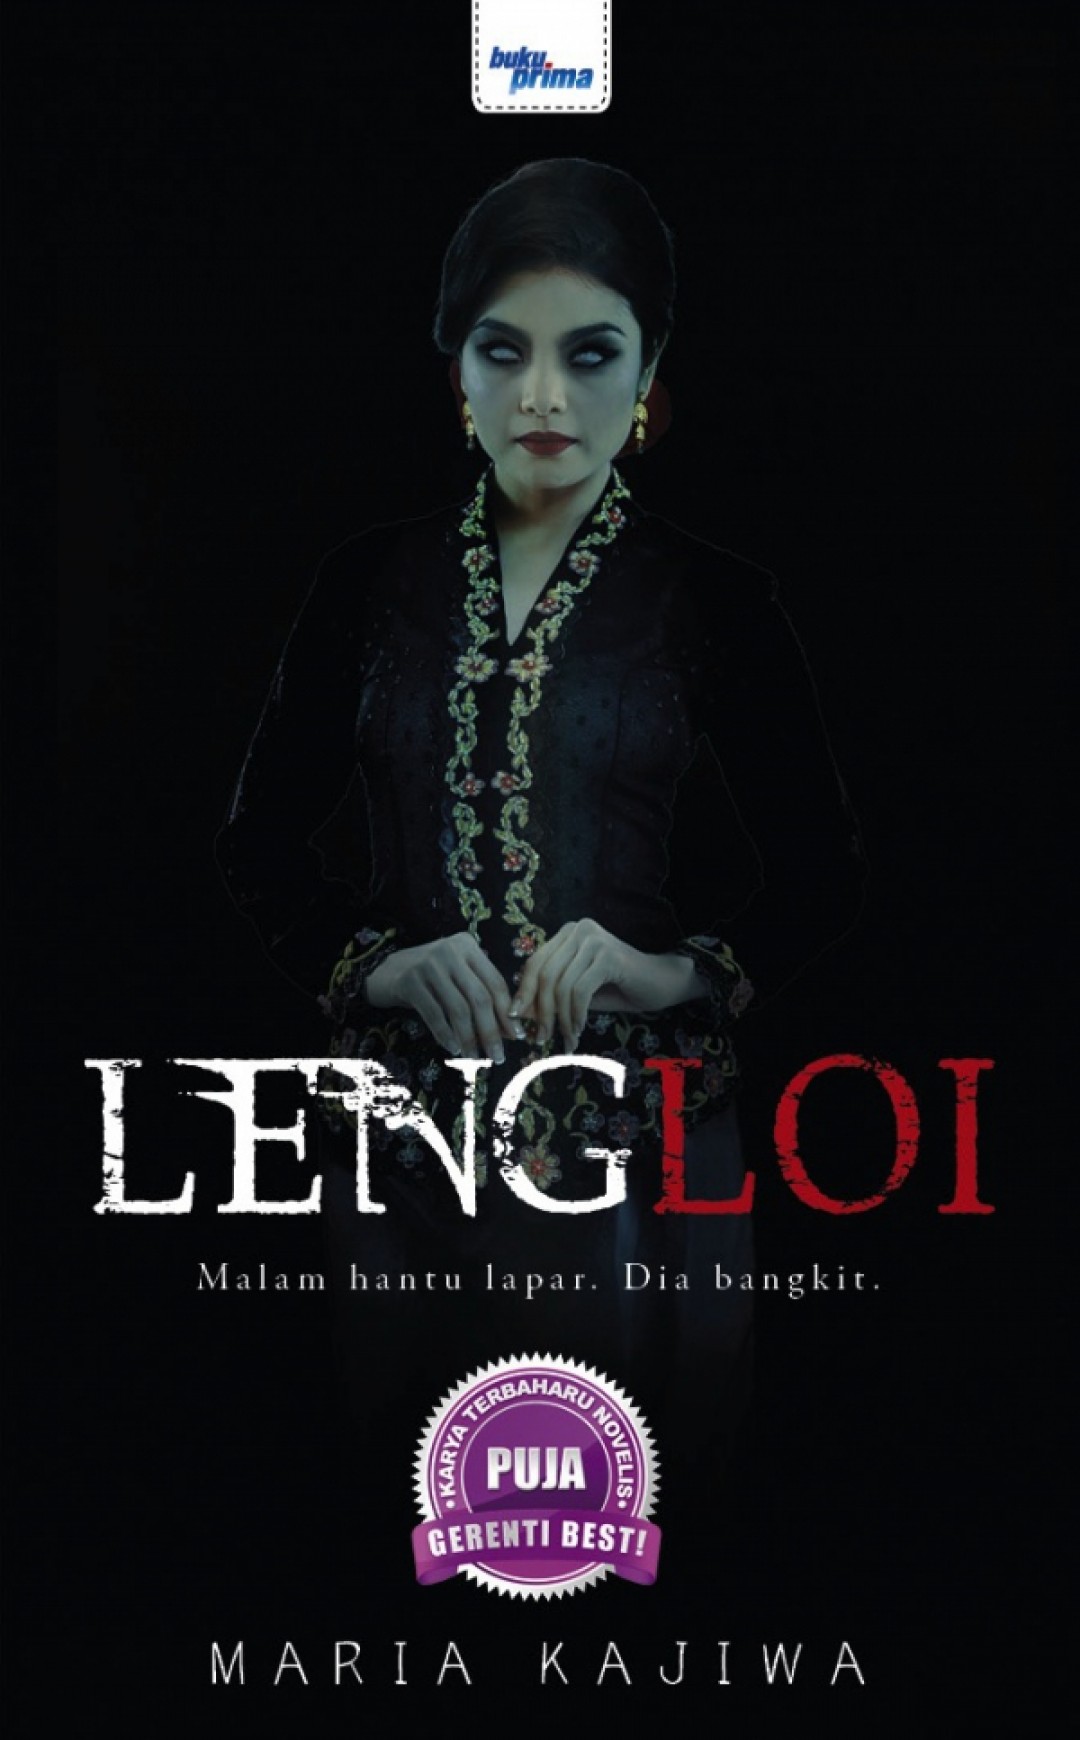 Lengloi - Maria Kajiwa